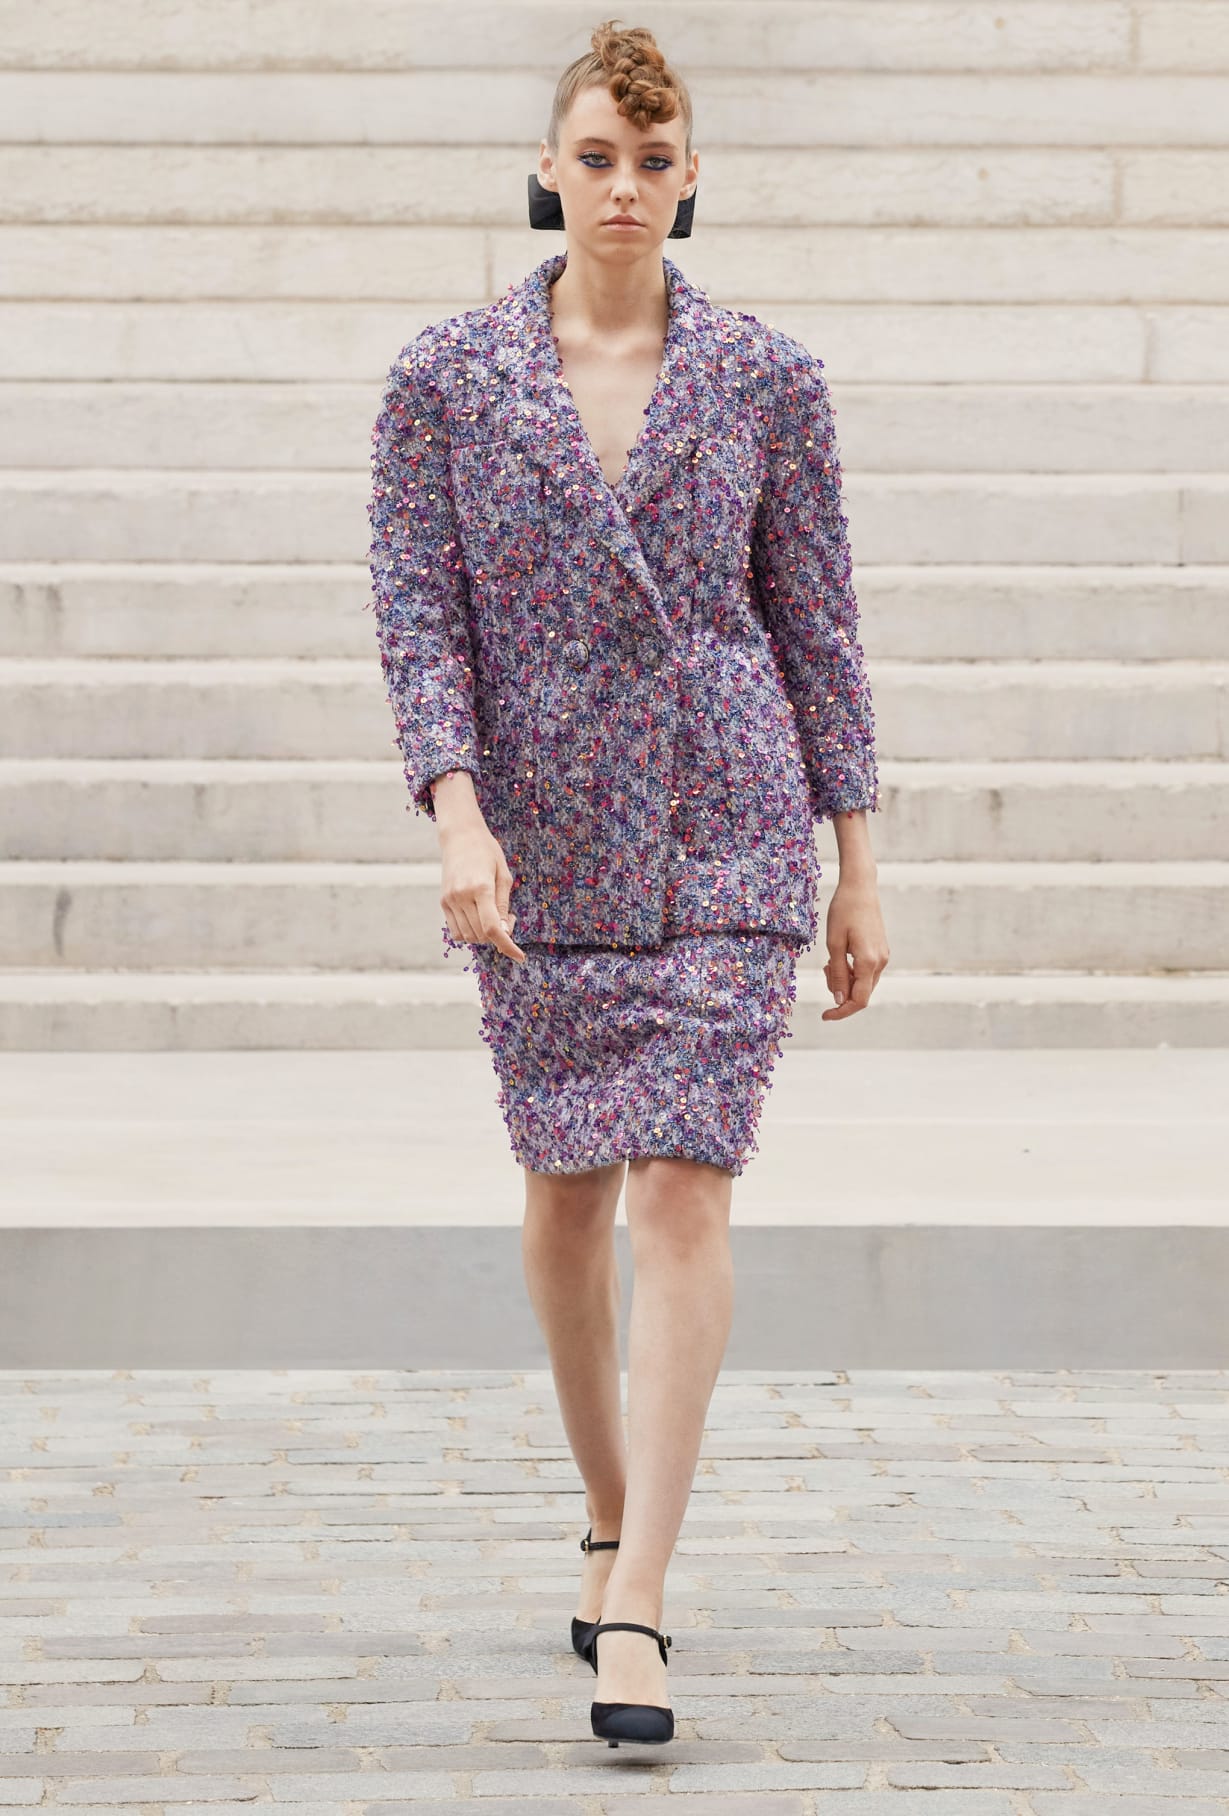 Chanel Haute Couture 2021: Sự tối giản của sàn diễn để tôn vinh trang phục  - Ảnh 18